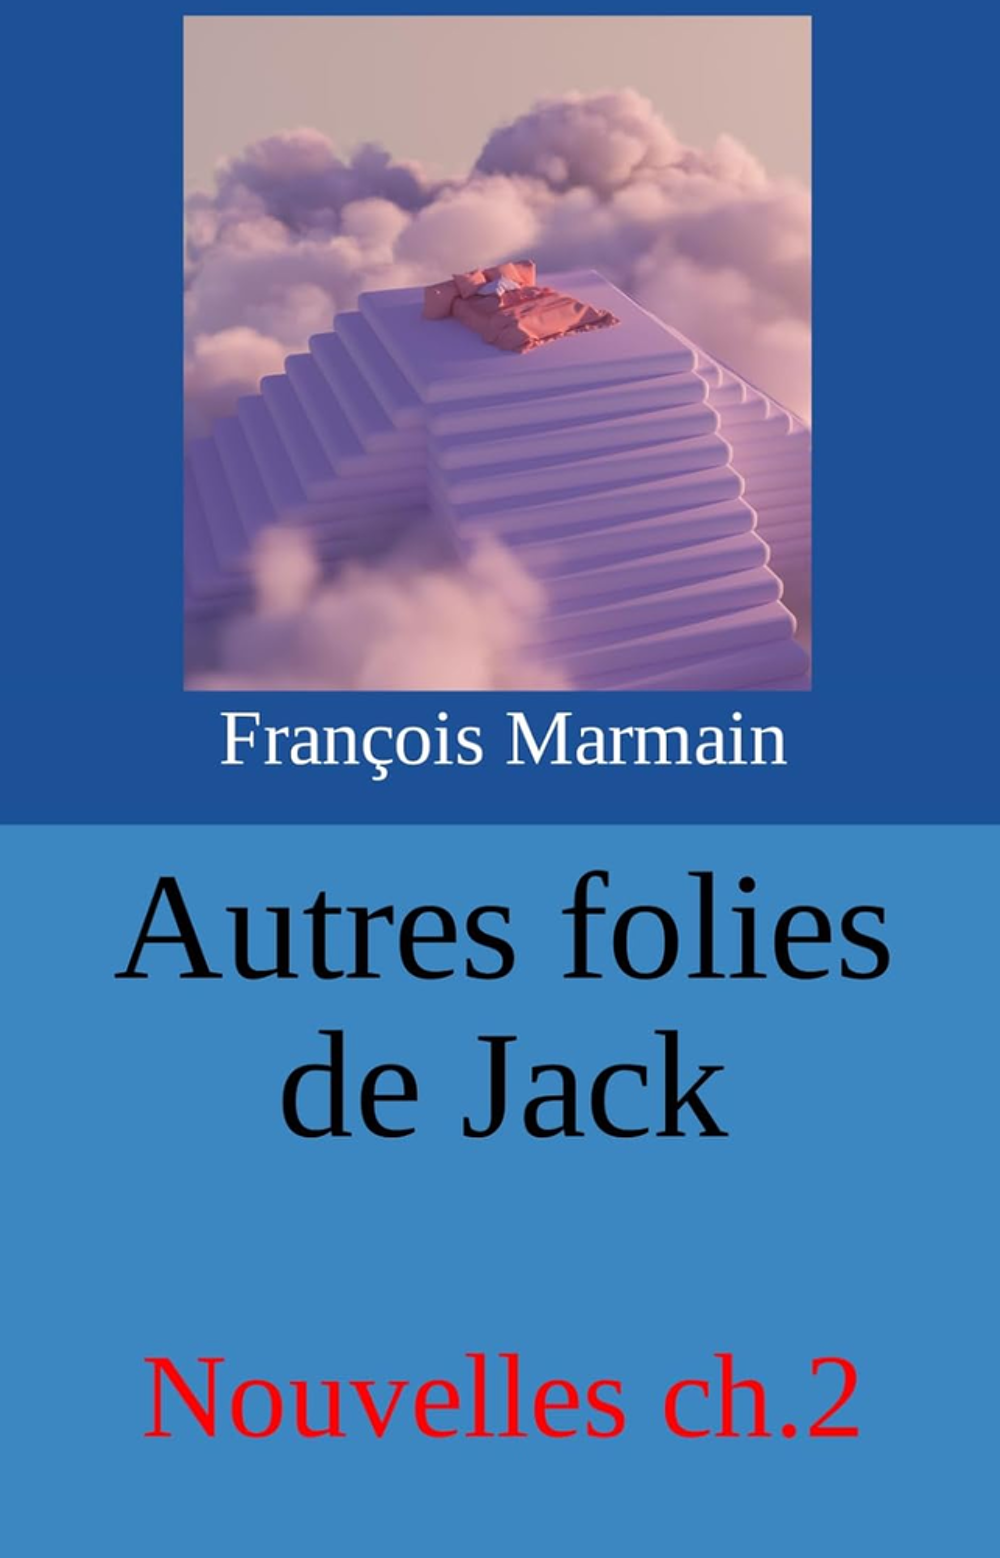   CRIVAIN, Franois Marmain
POUR VOUS J'CRIS:
TEXTES, LIVRE 